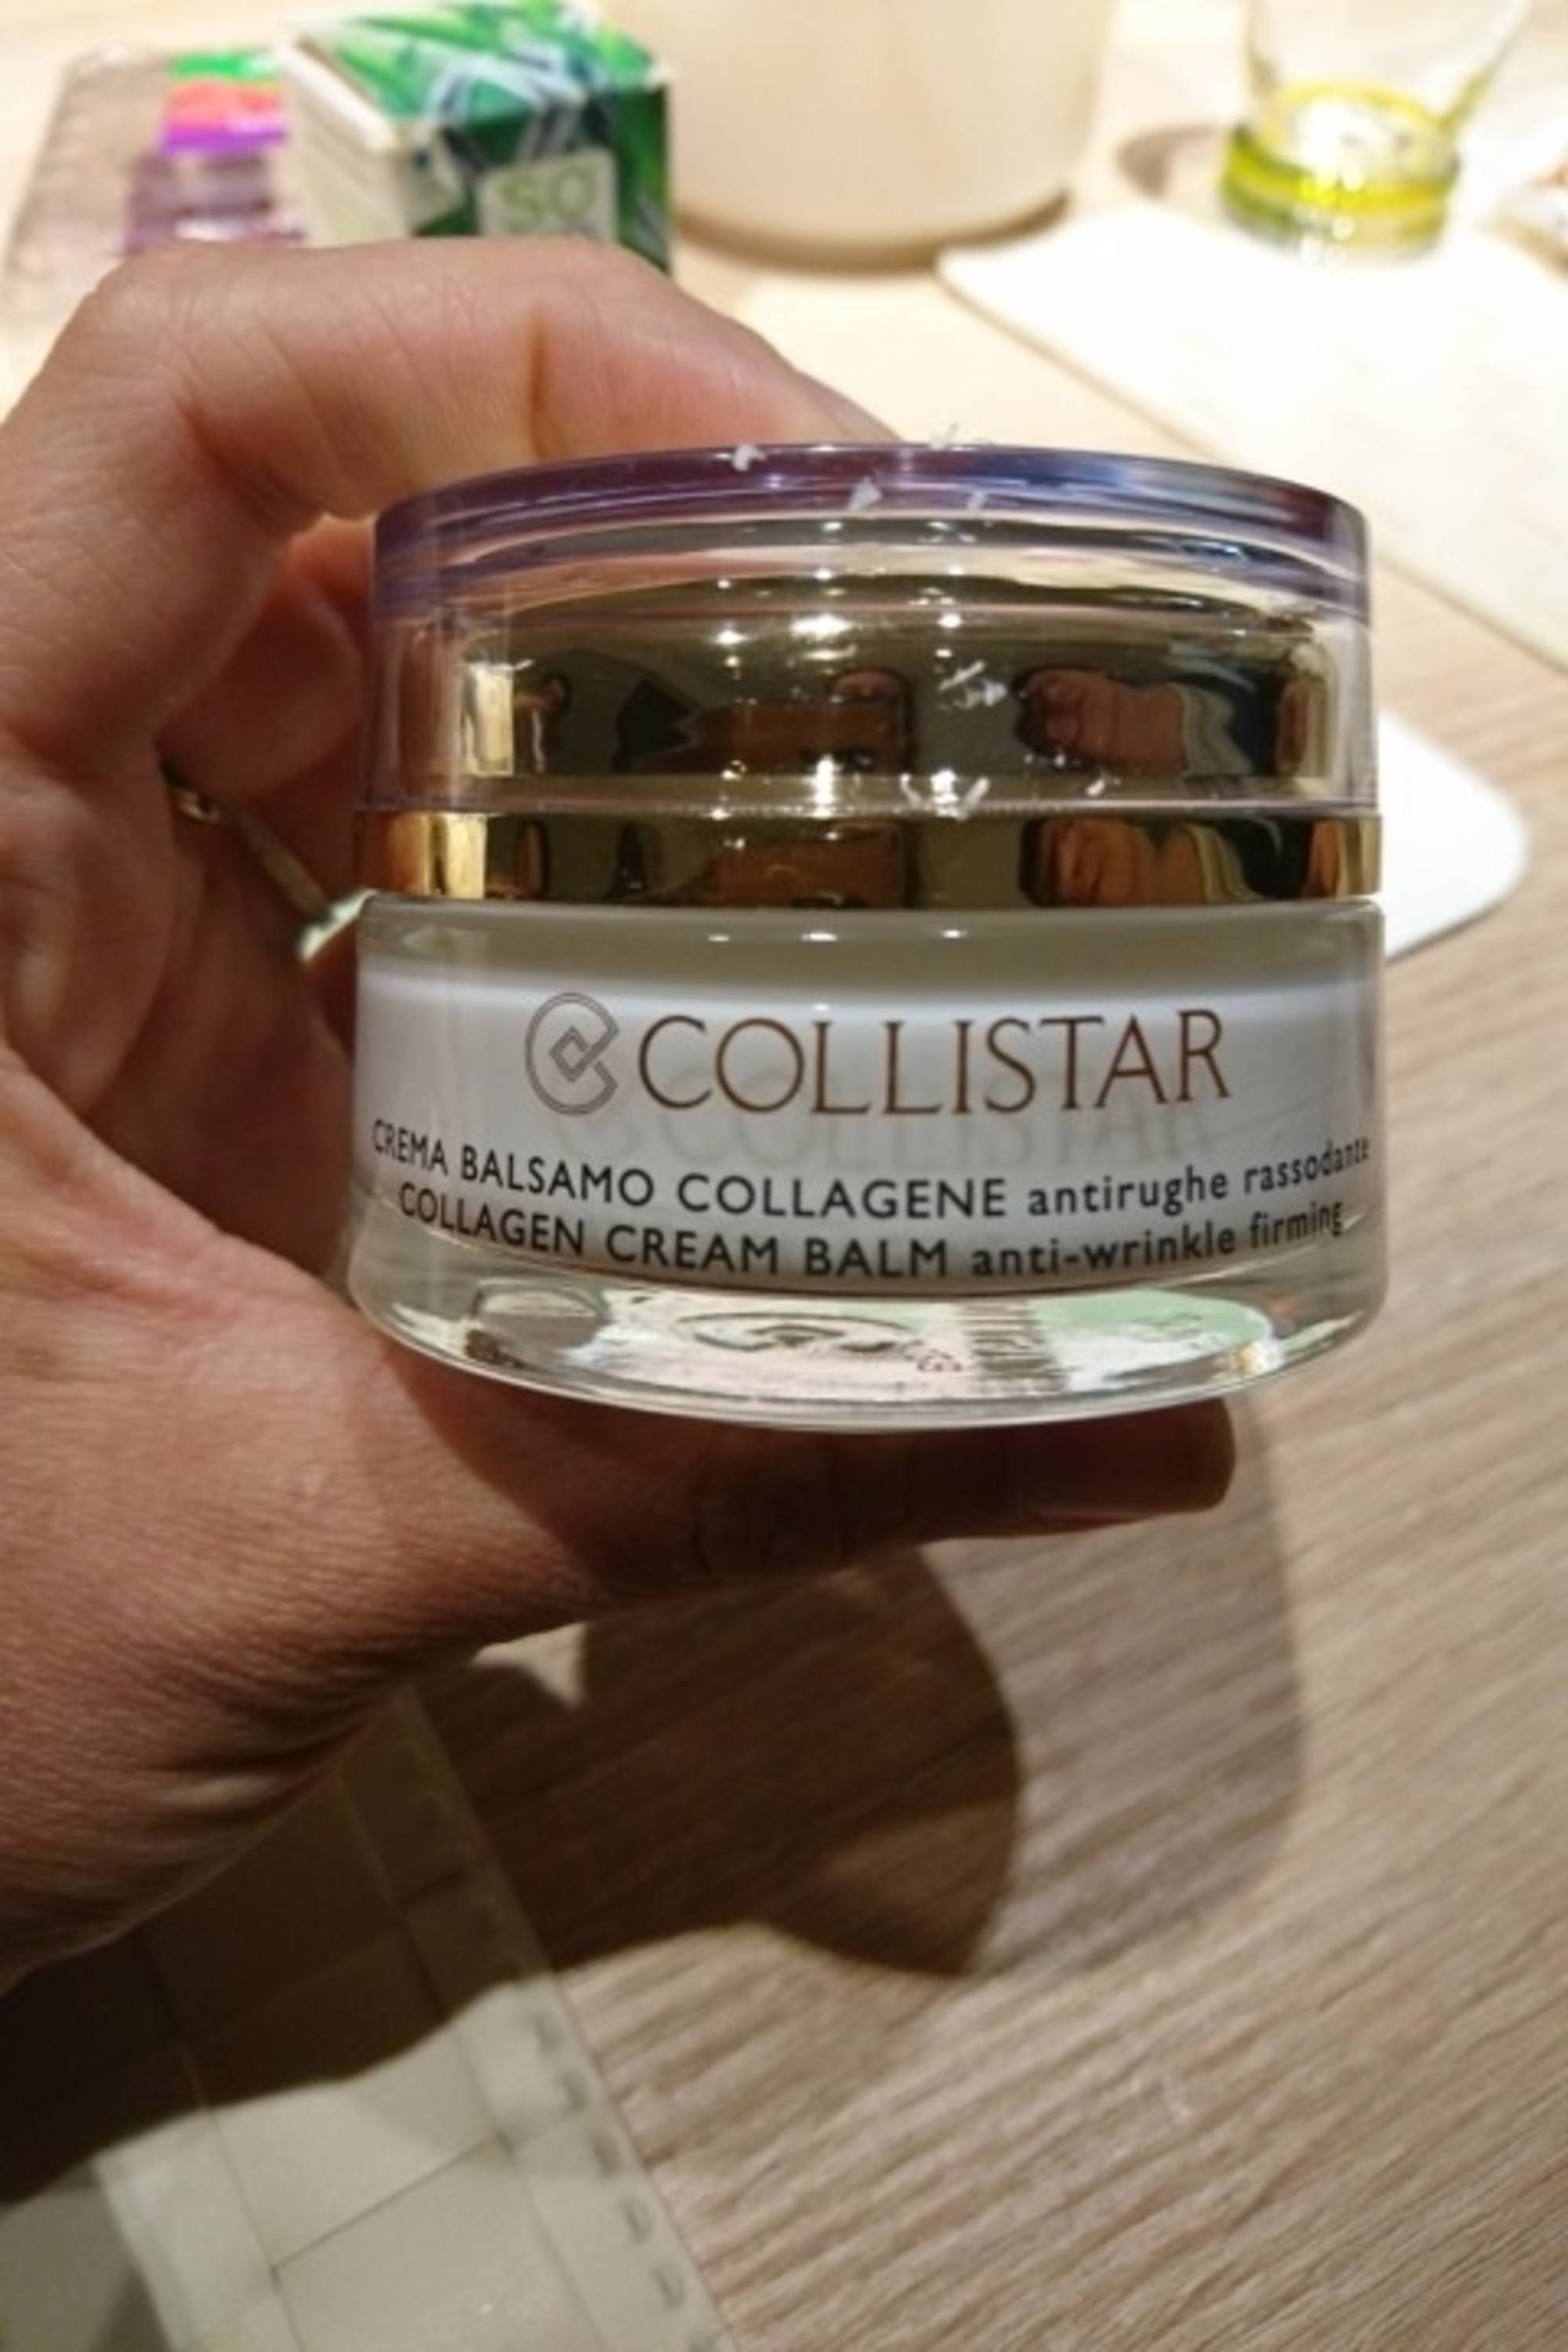 COLLISTAR - Collagen cream balm anti-wrinkle firming